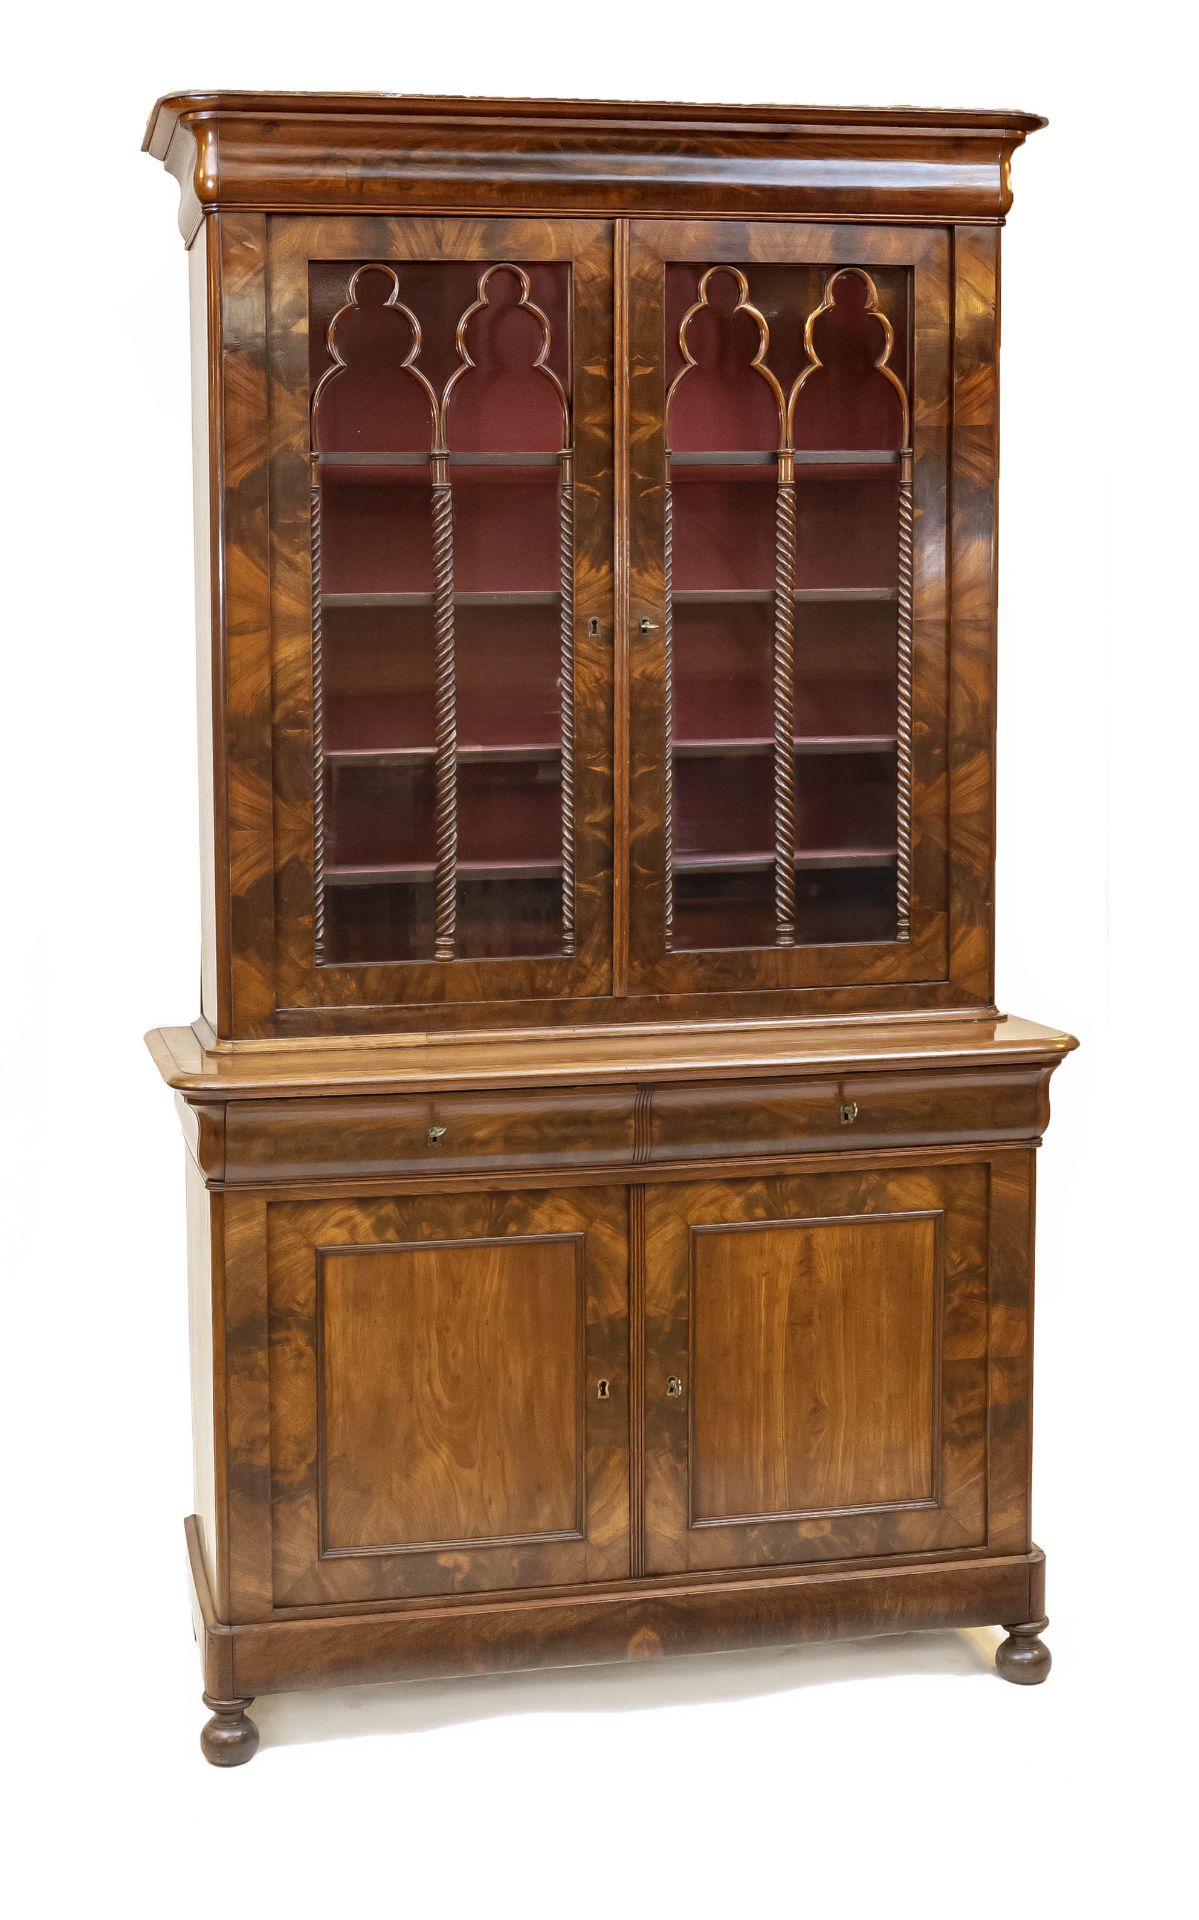 Mahogany display case/bookcase, 1860